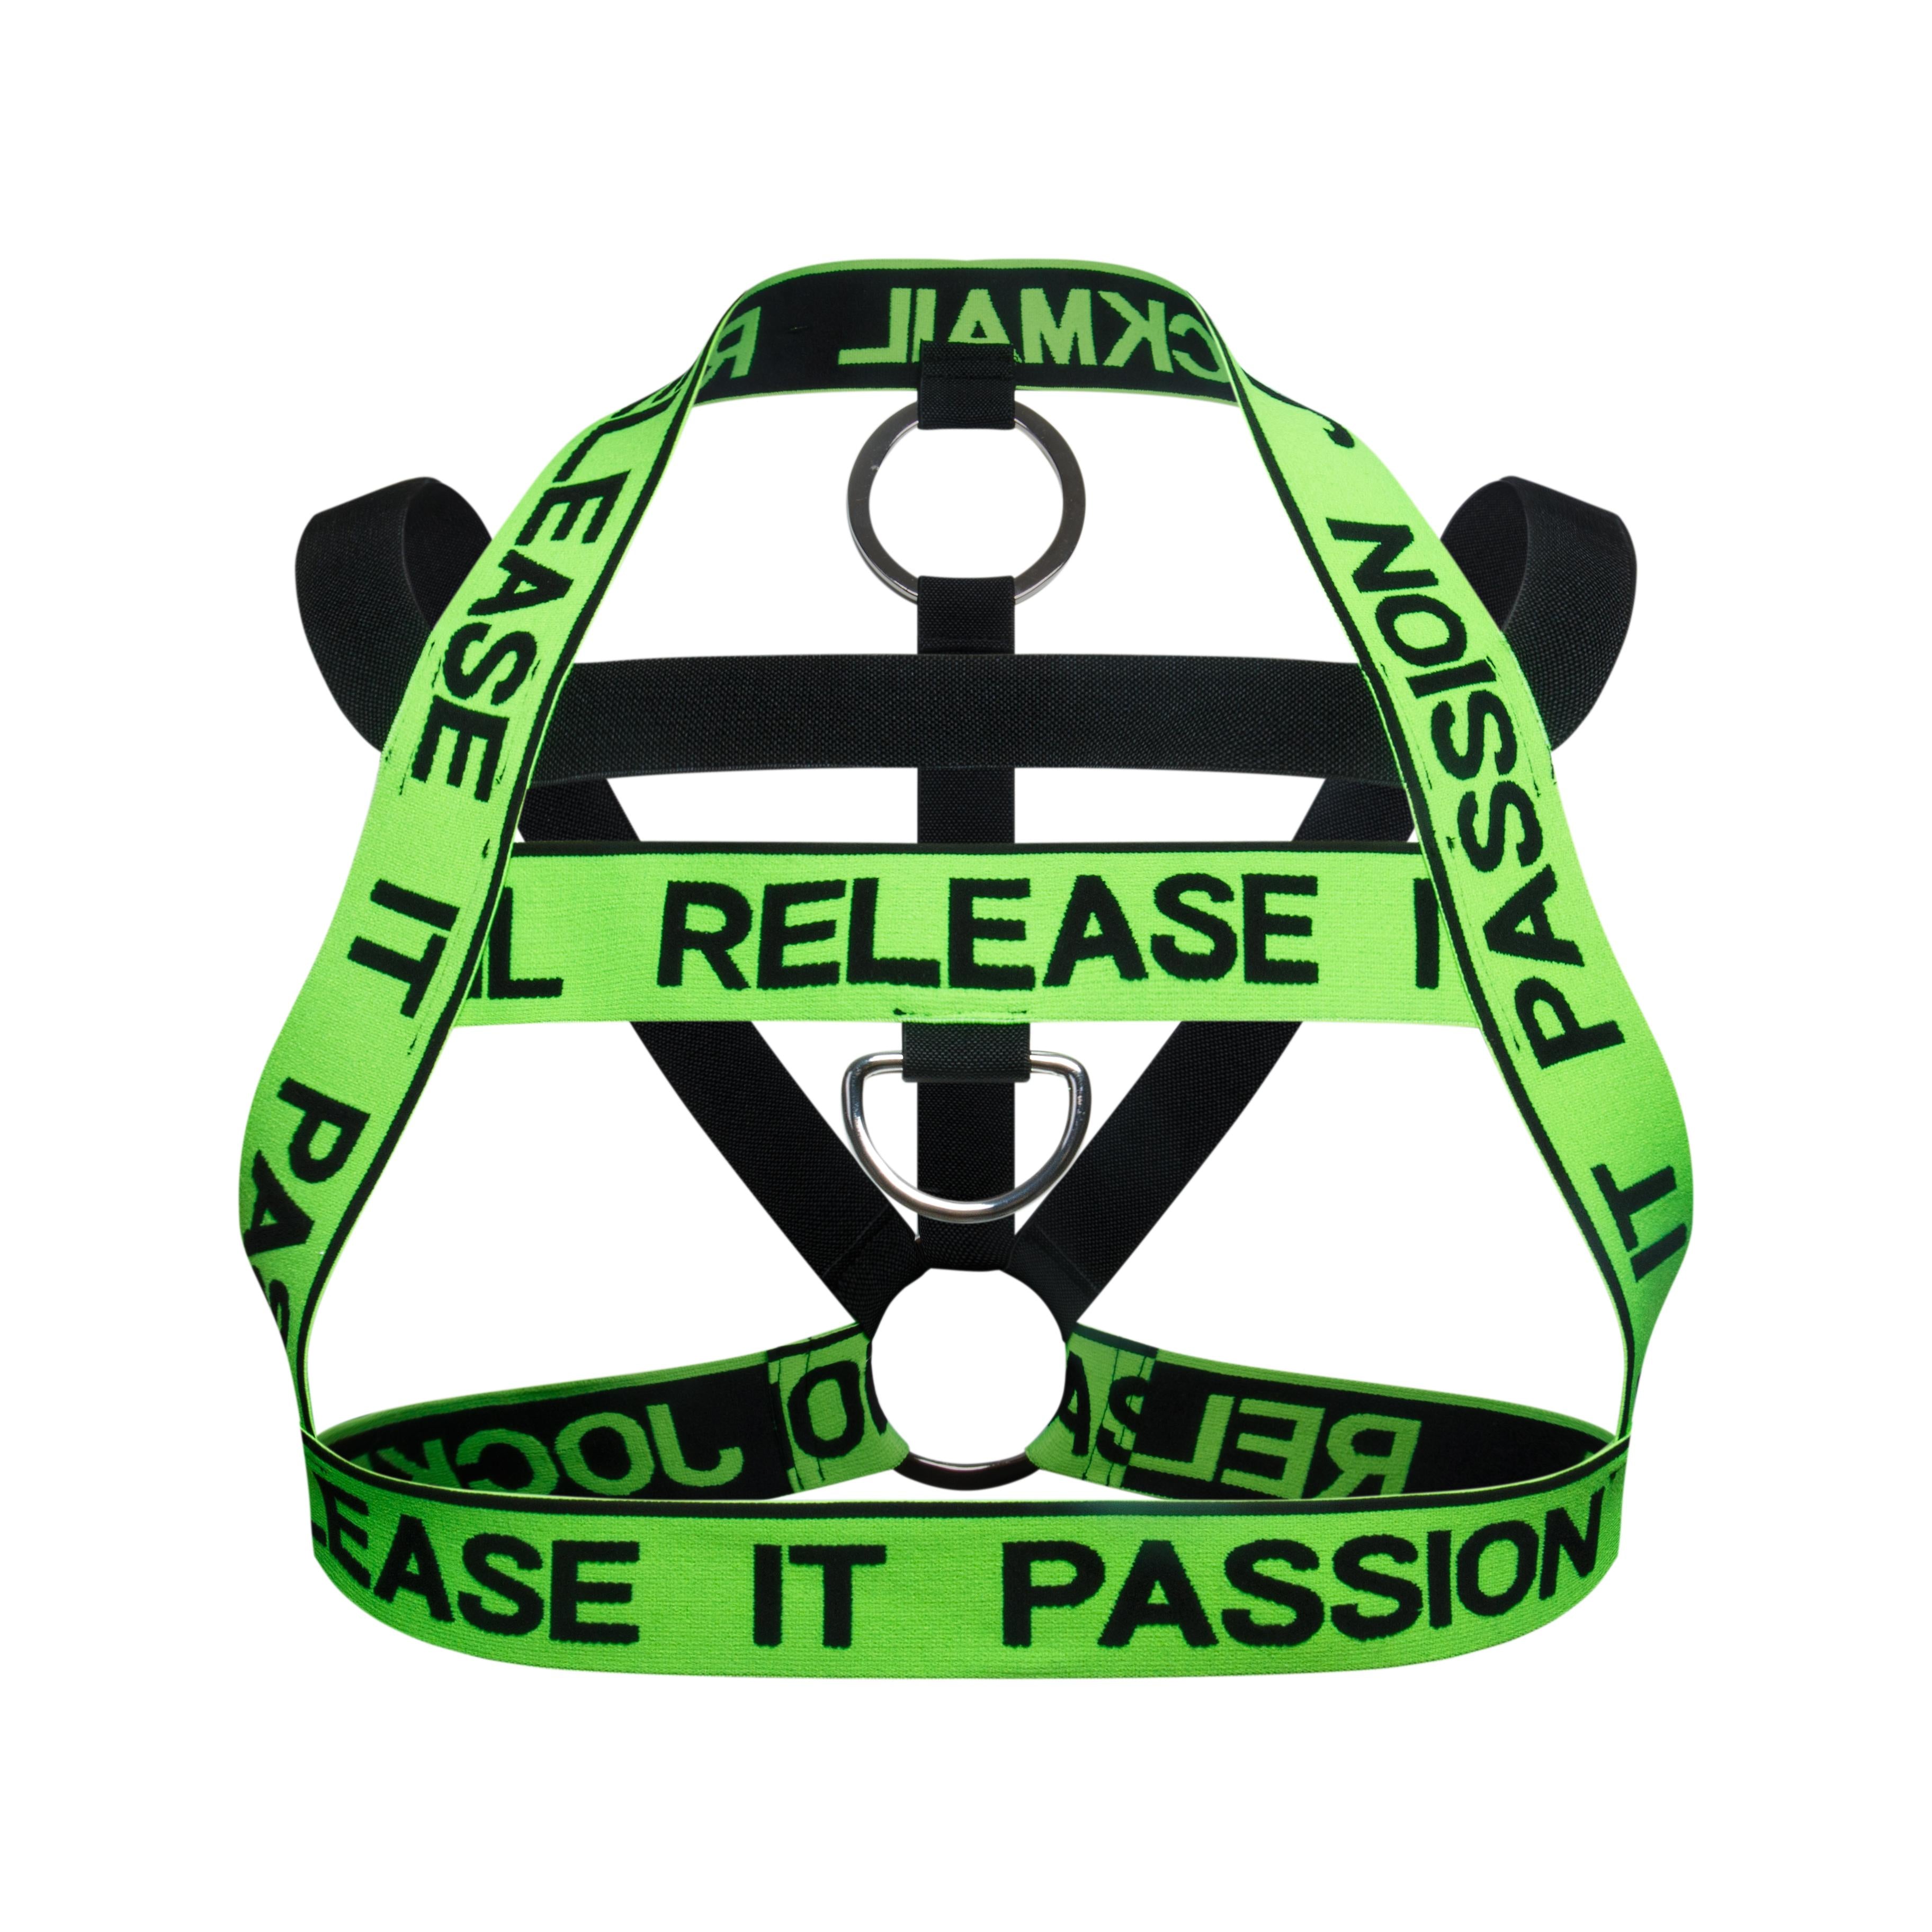 Men's JOCKMAIL JM911 - Release It Harness 2